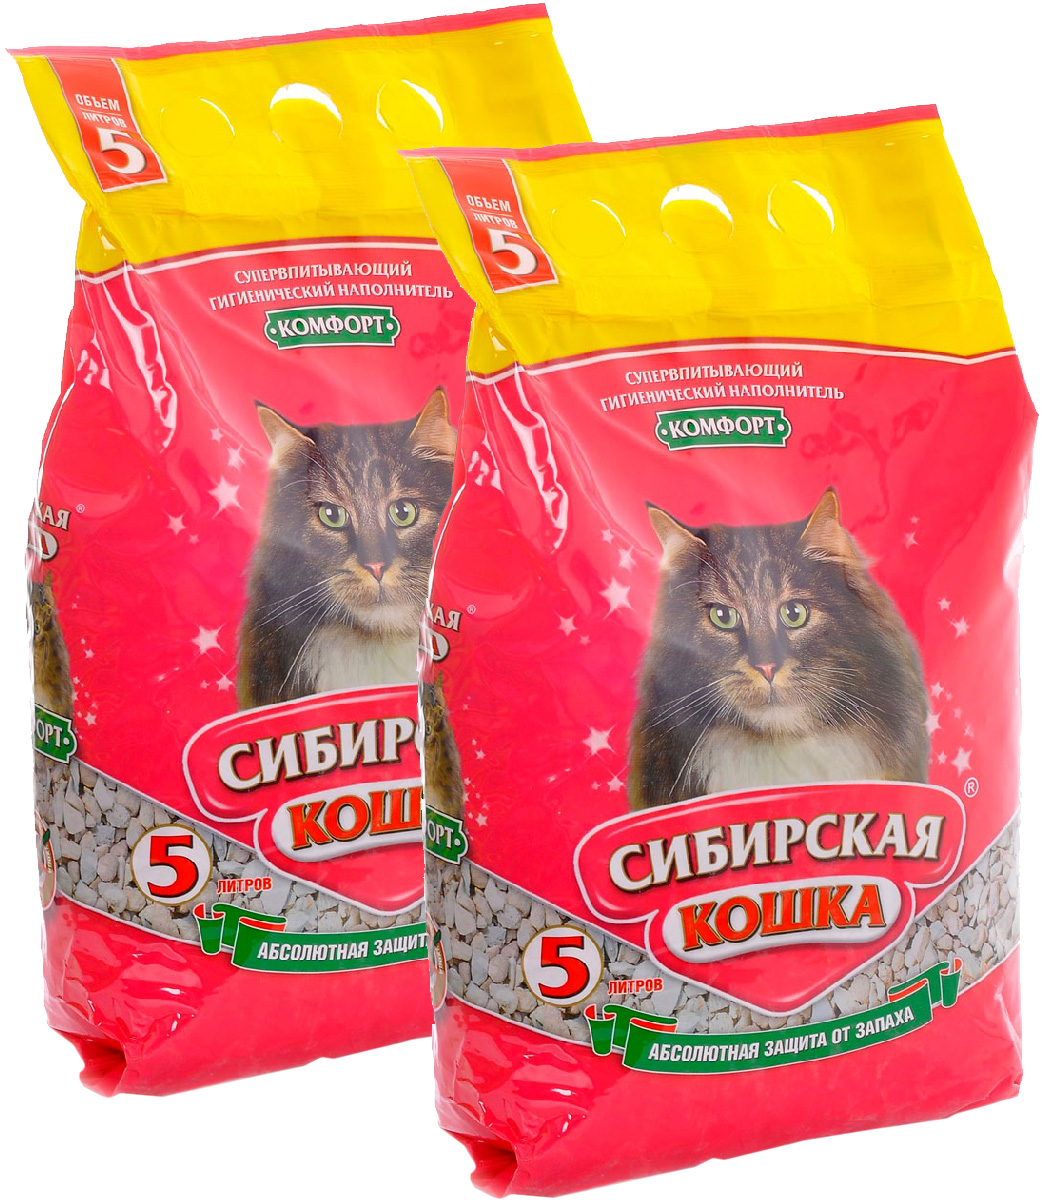 Наполнитель для туалета кошек Сибирская кошка впитывающий 2 шт по 5 л